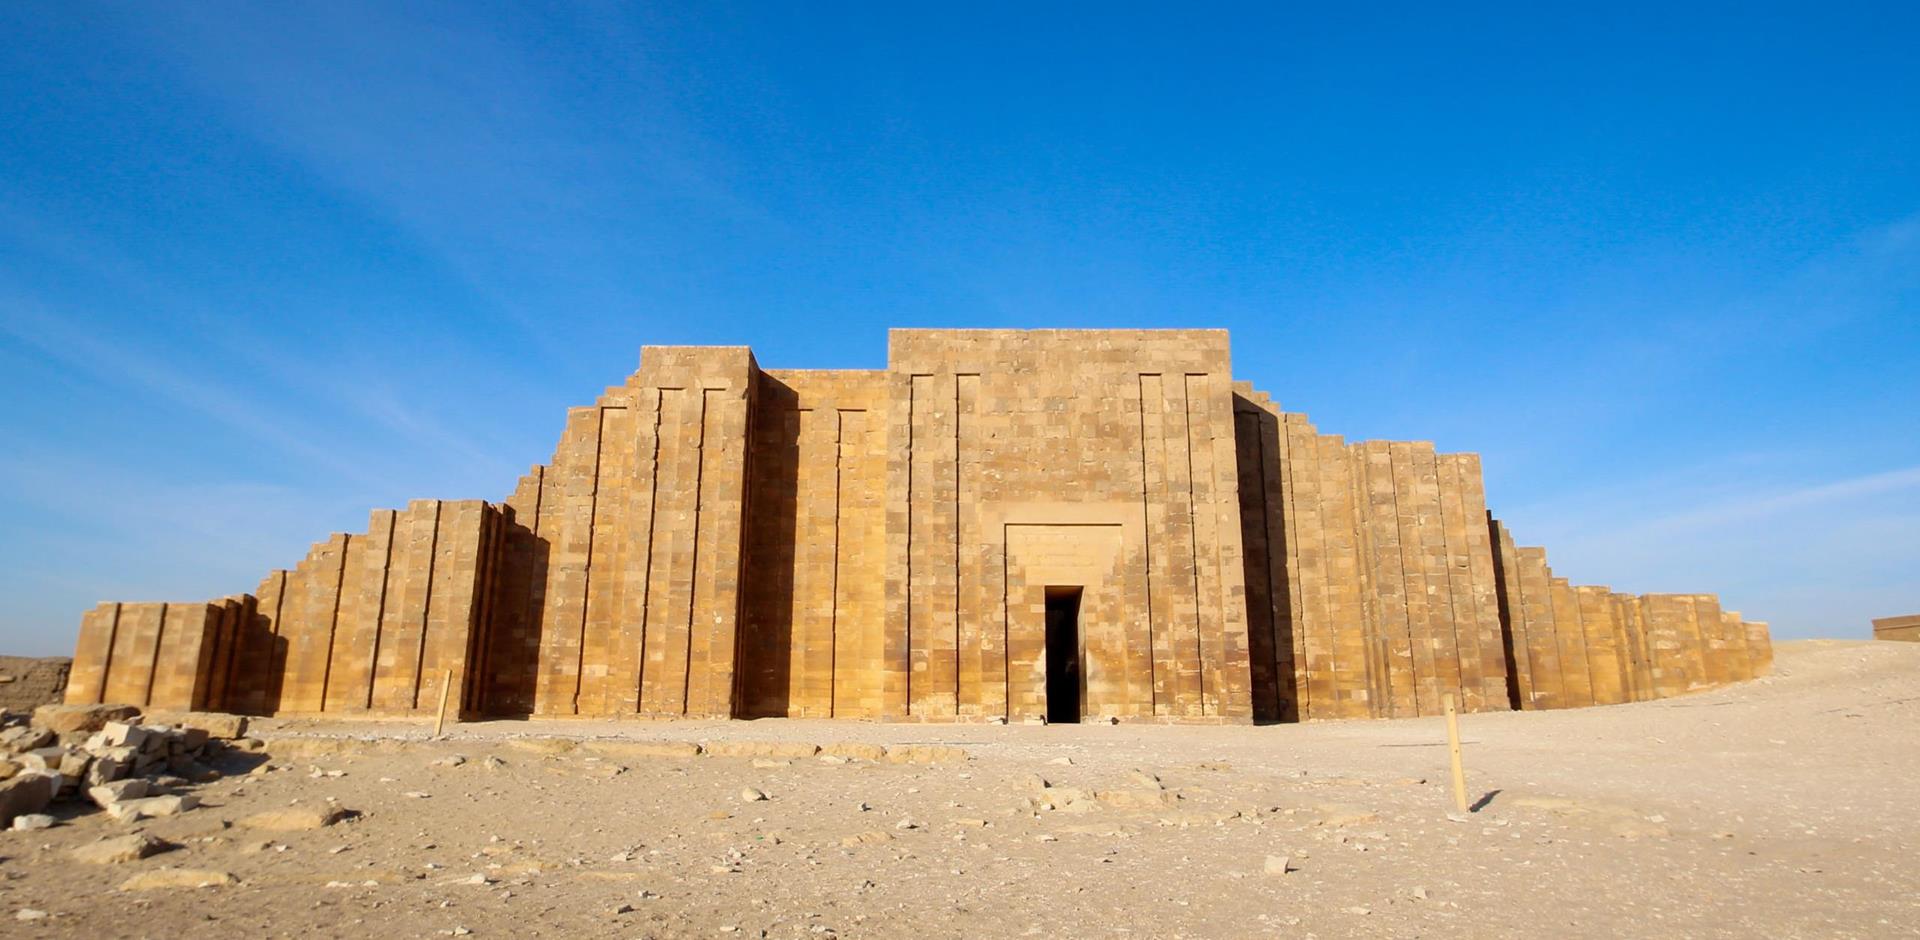 Entrance to the Columnal Hall of Sakkara, Egypt